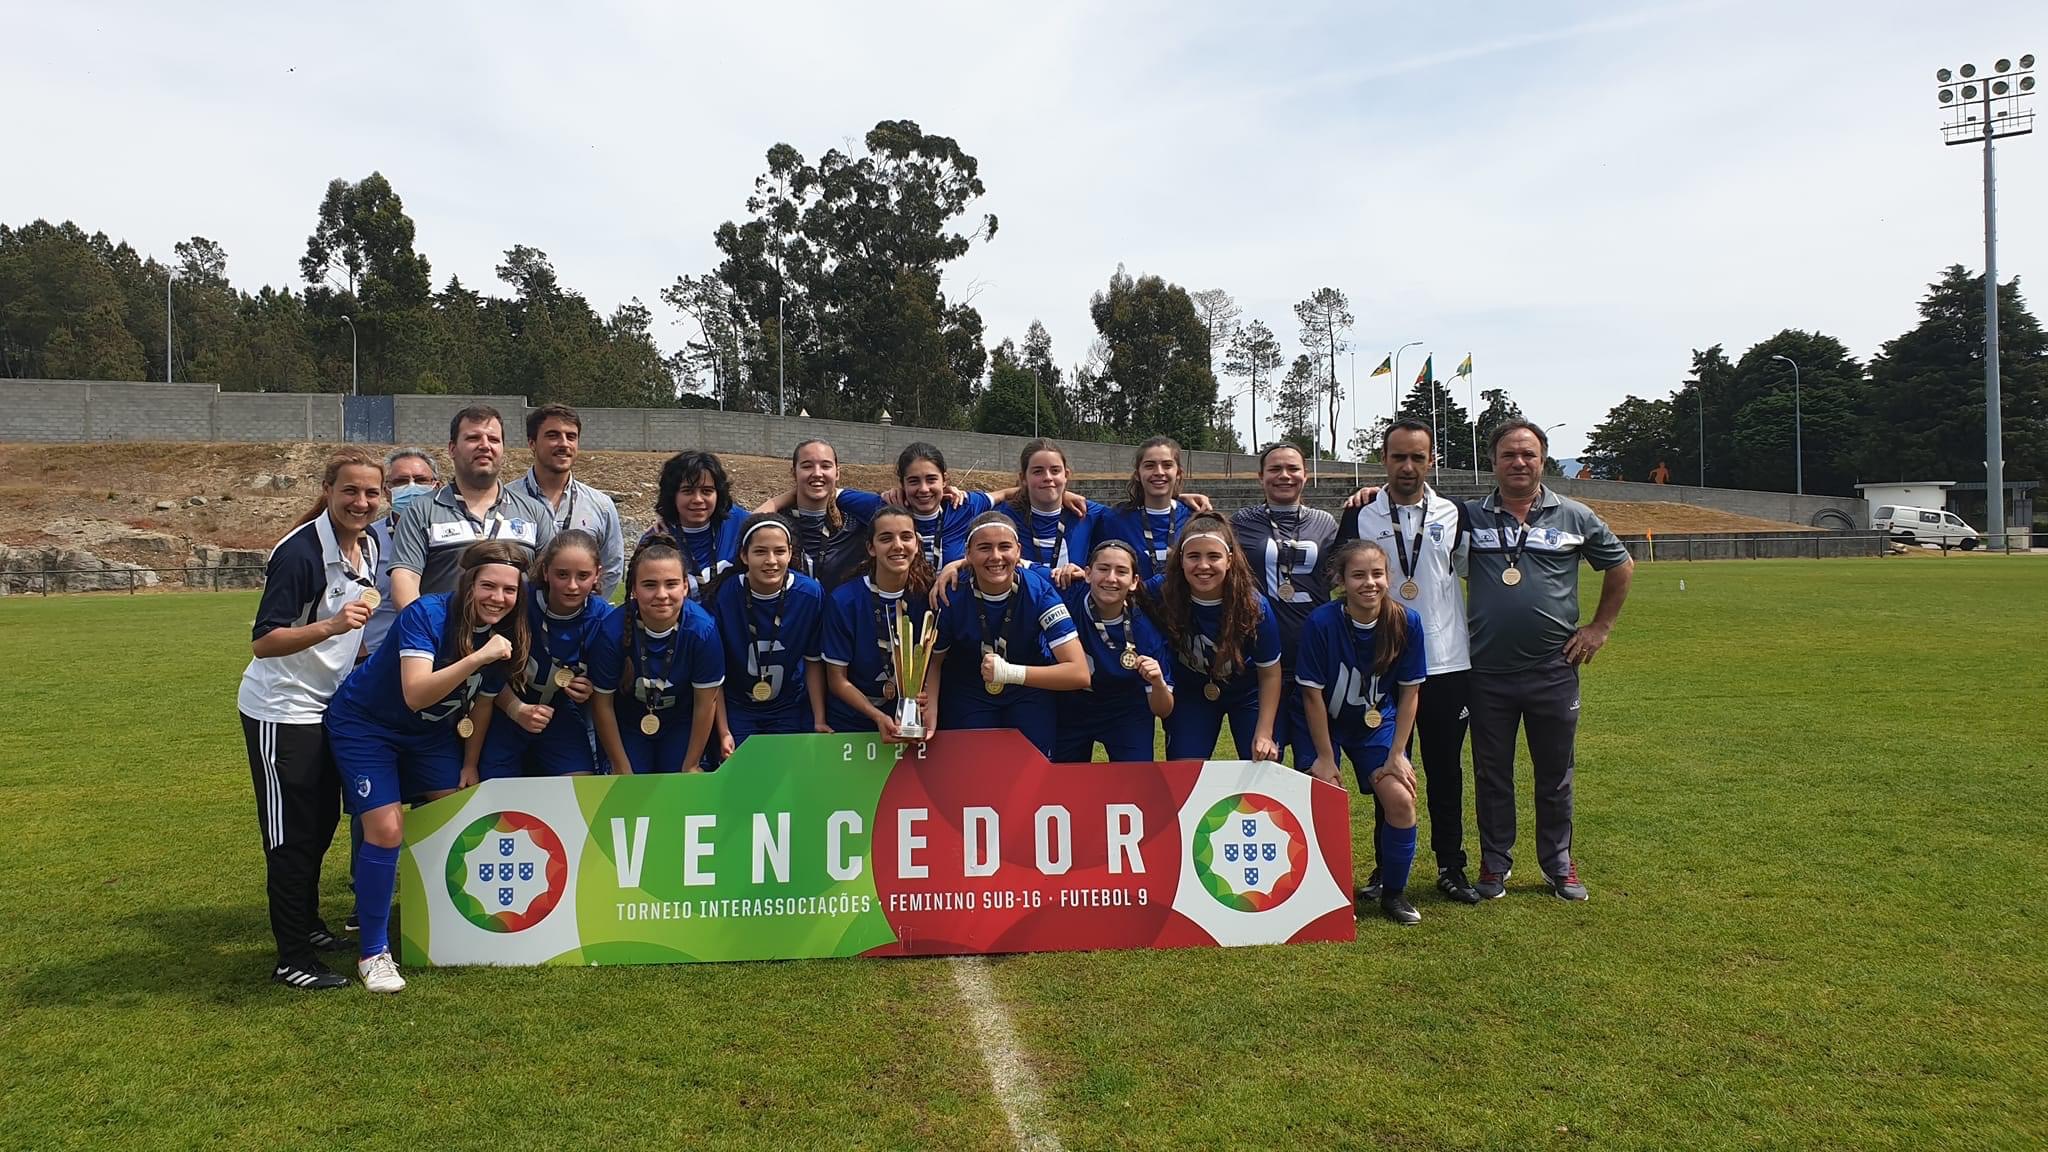 AF Braga vence Interassociações Feminino Sub-16